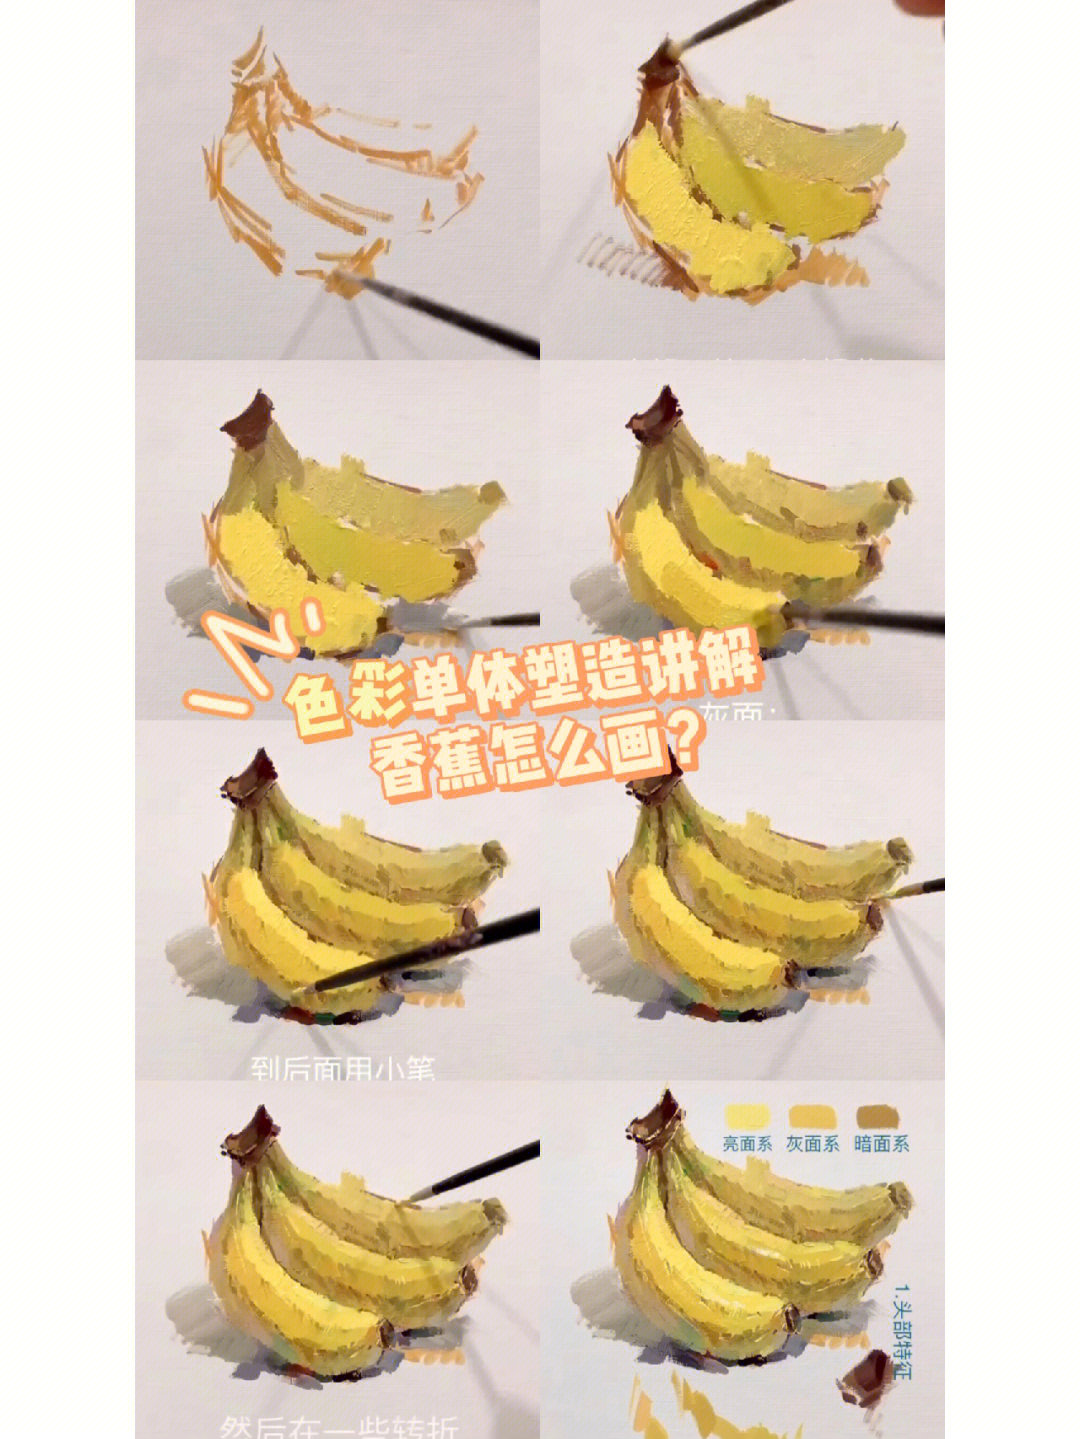 香蕉颜色变化顺序图片